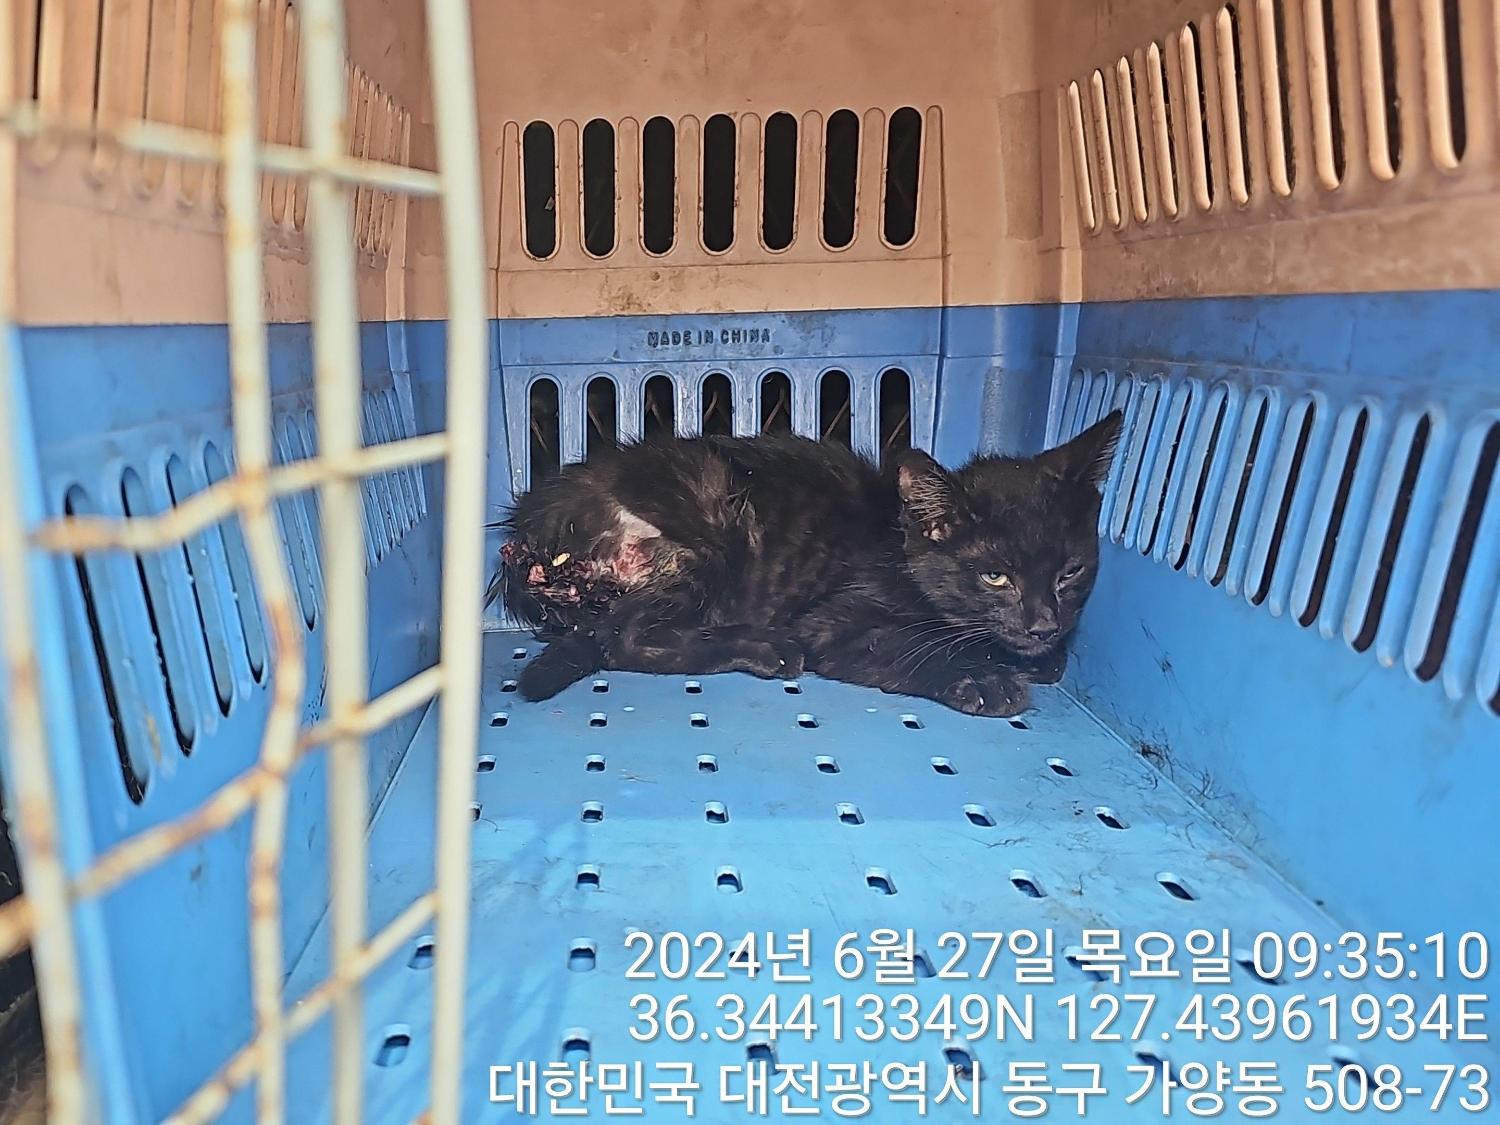 공고 번호가 대전-동구-2024-00178인 한국 고양이 동물 사진